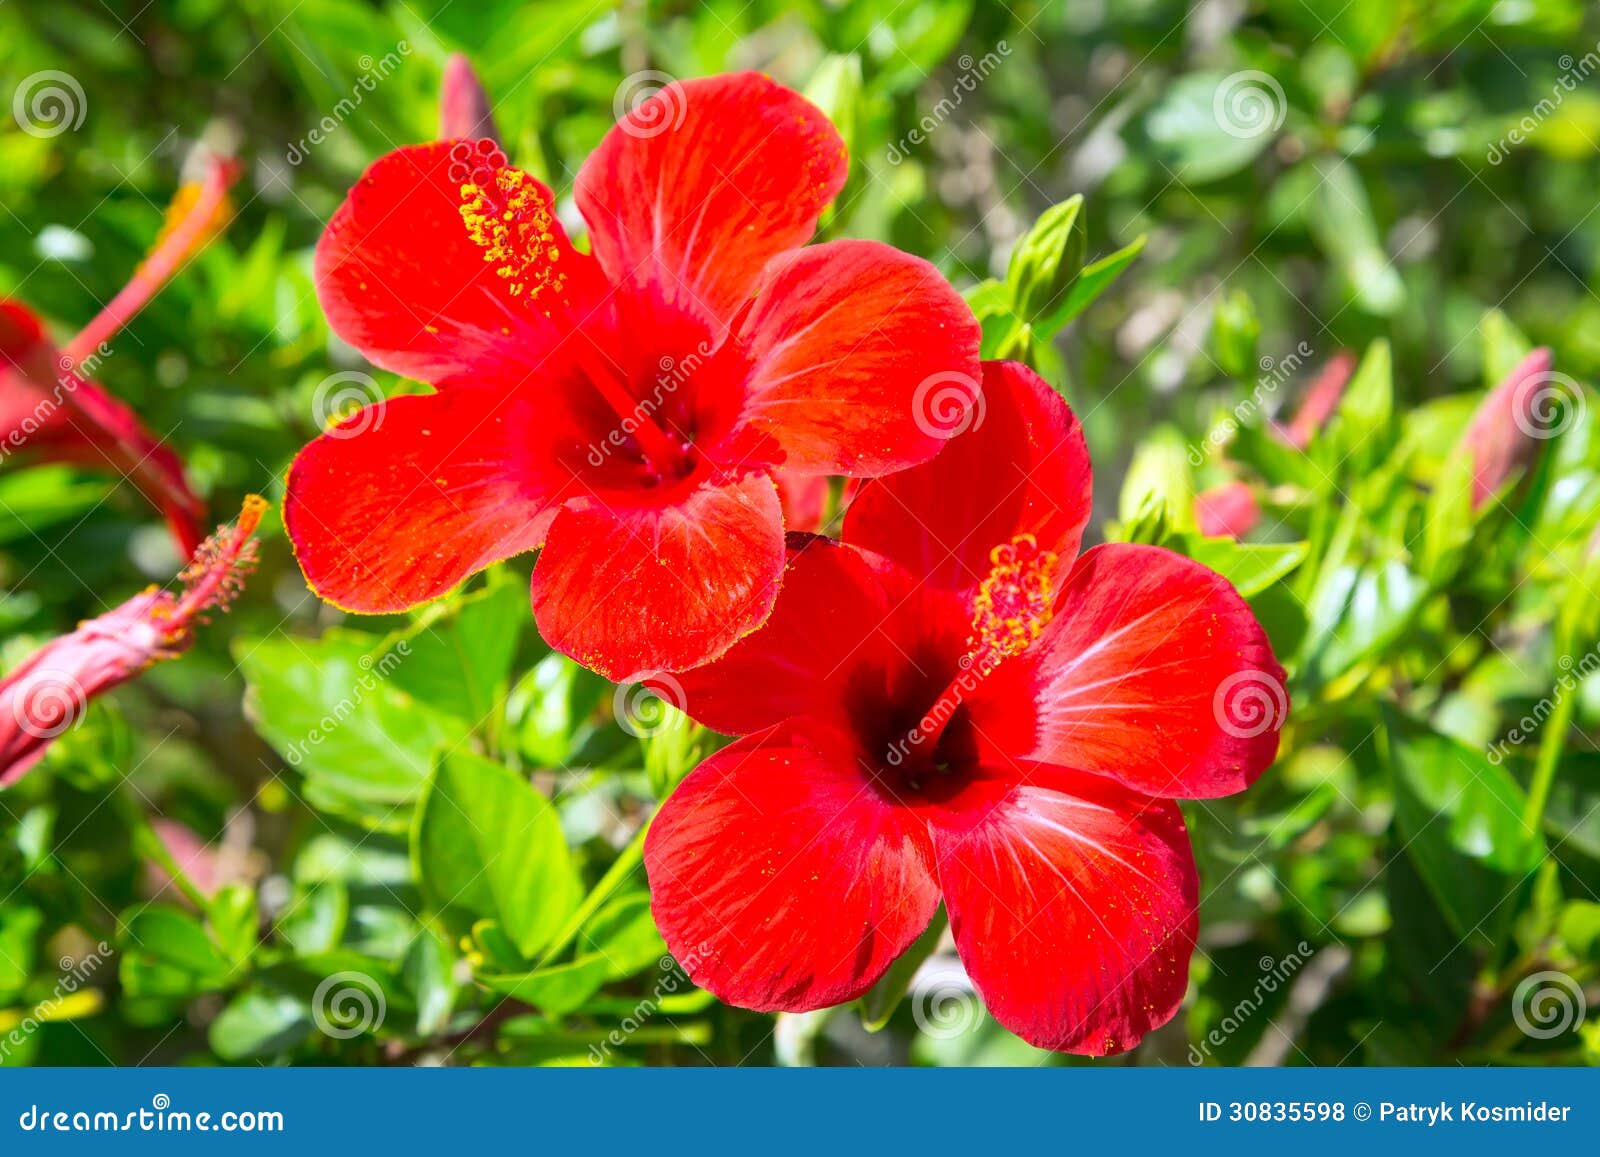 140 Flores Rojas Del Hibisco En El Jardín Tropical Fotos de stock - Fotos  libres de regalías de Dreamstime